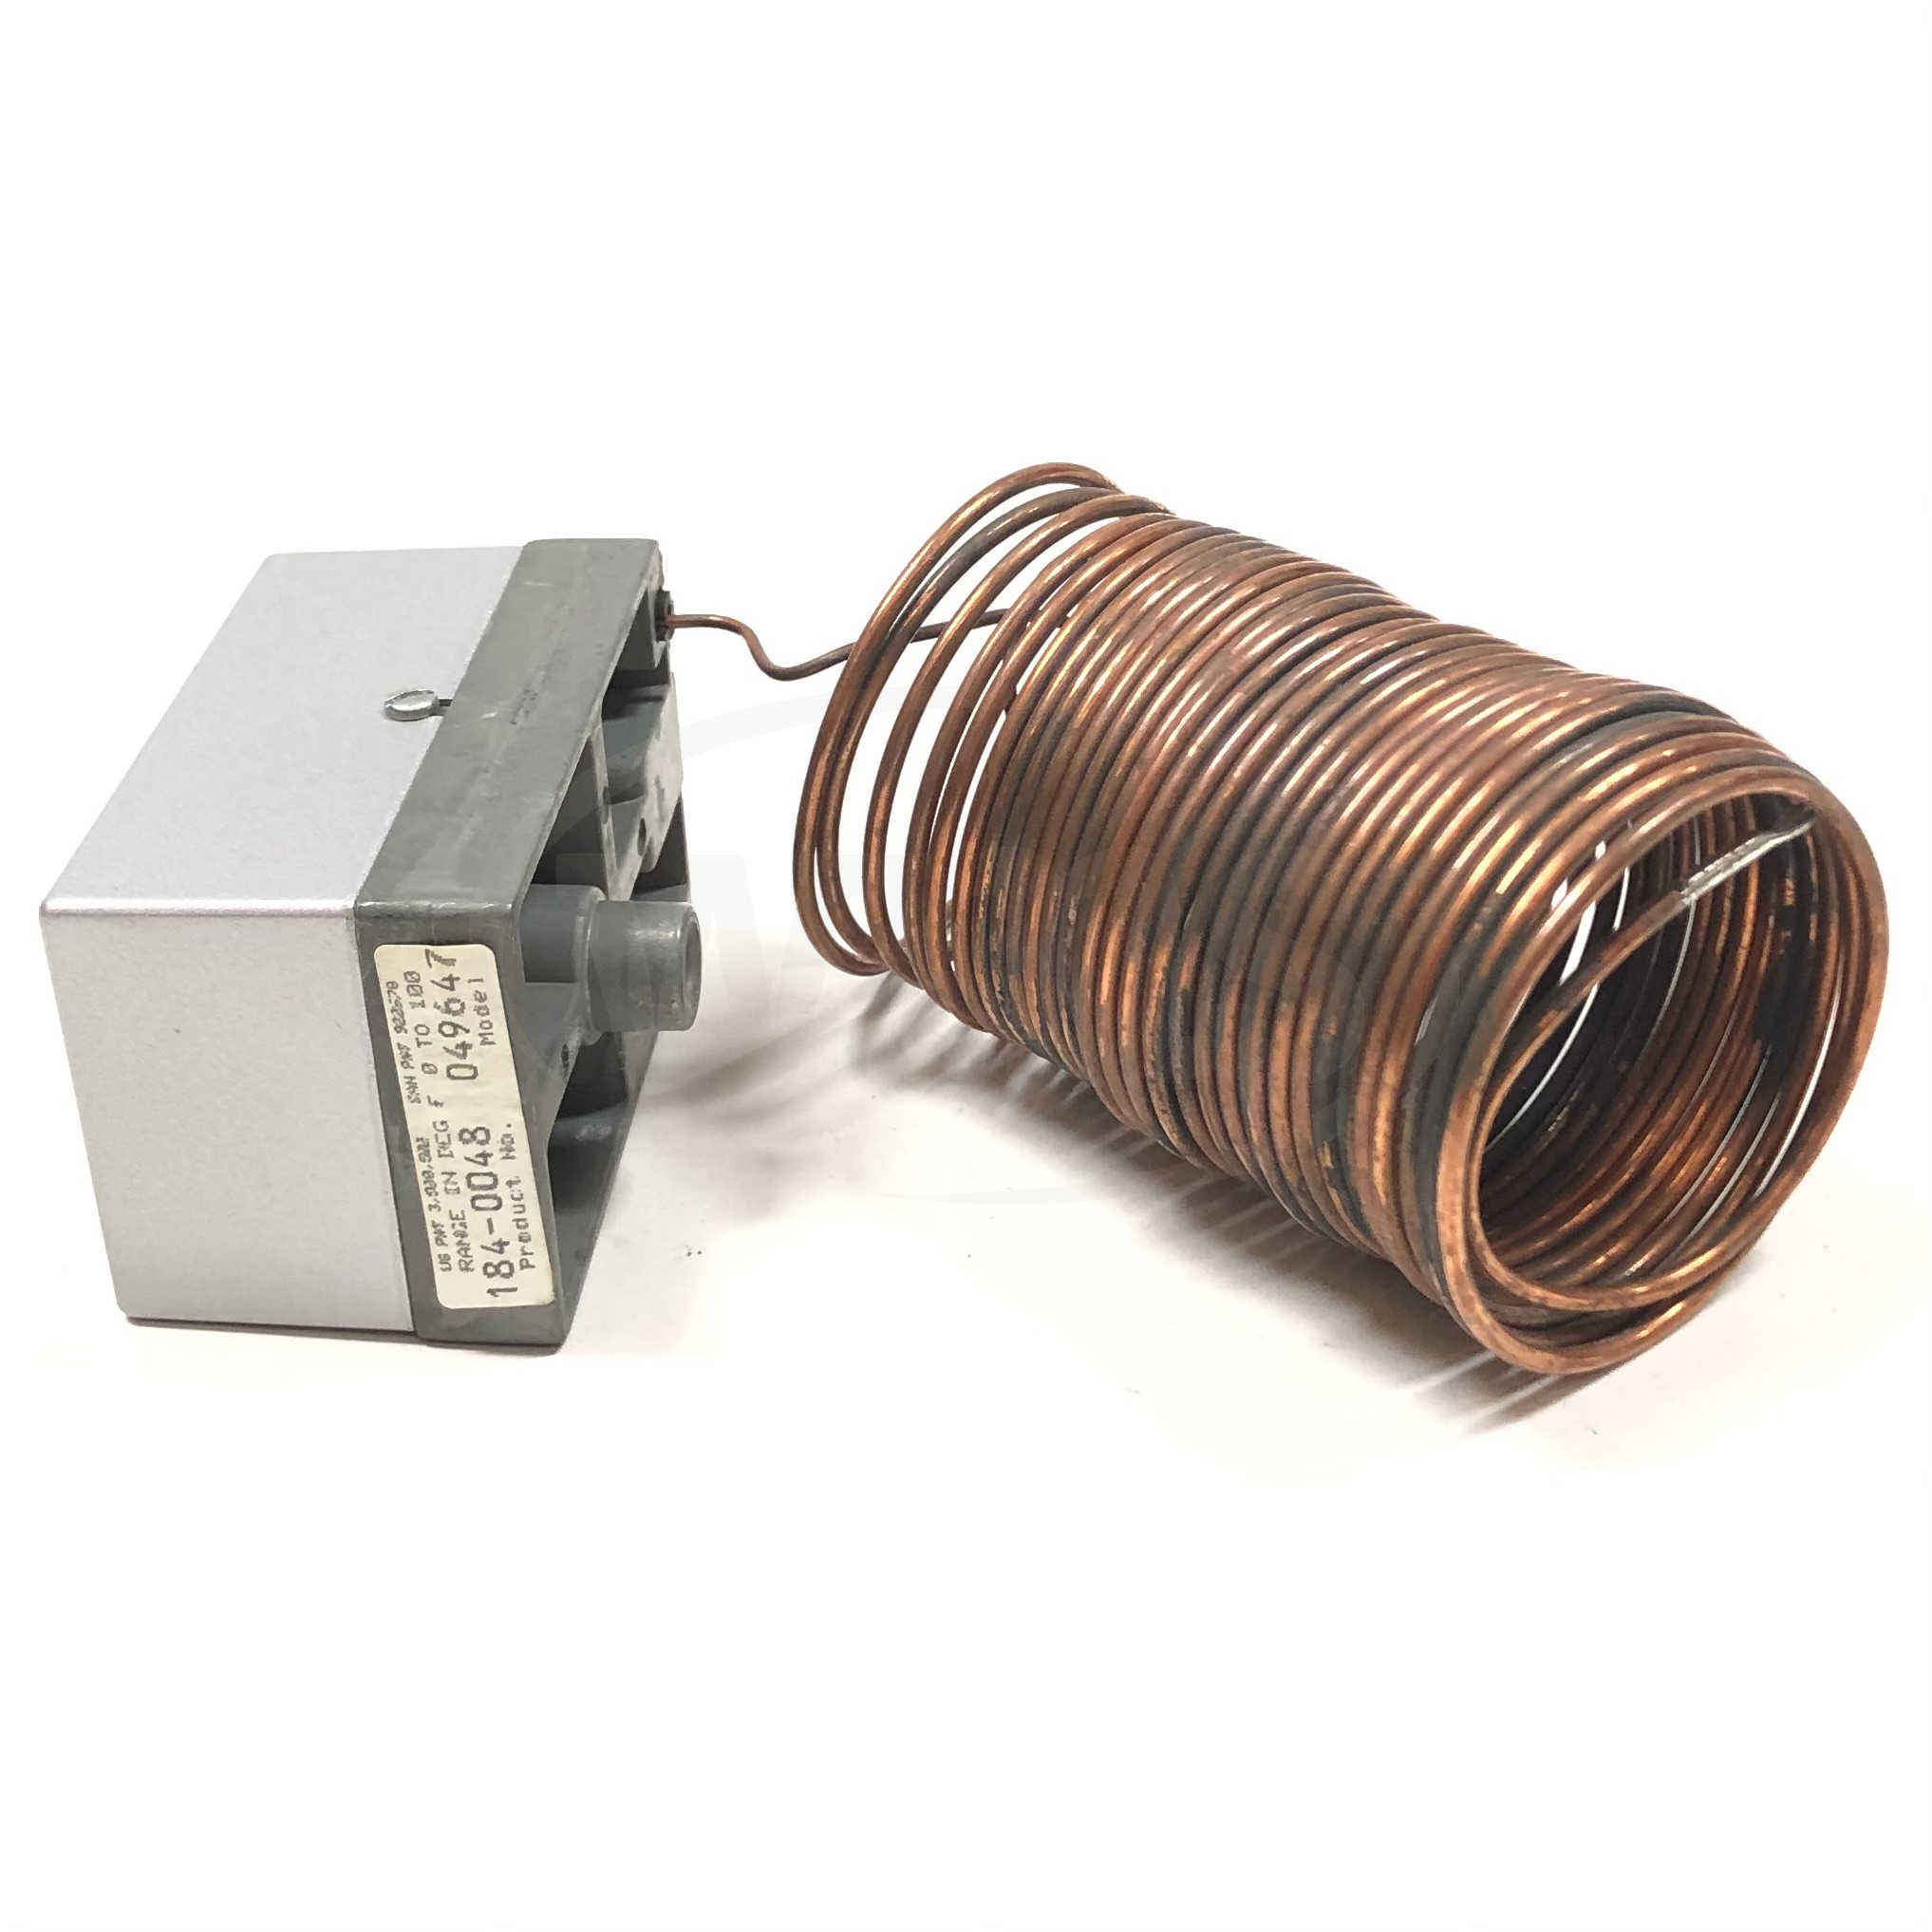 1840048 Landis & Gyr Temperature Transmitter 4